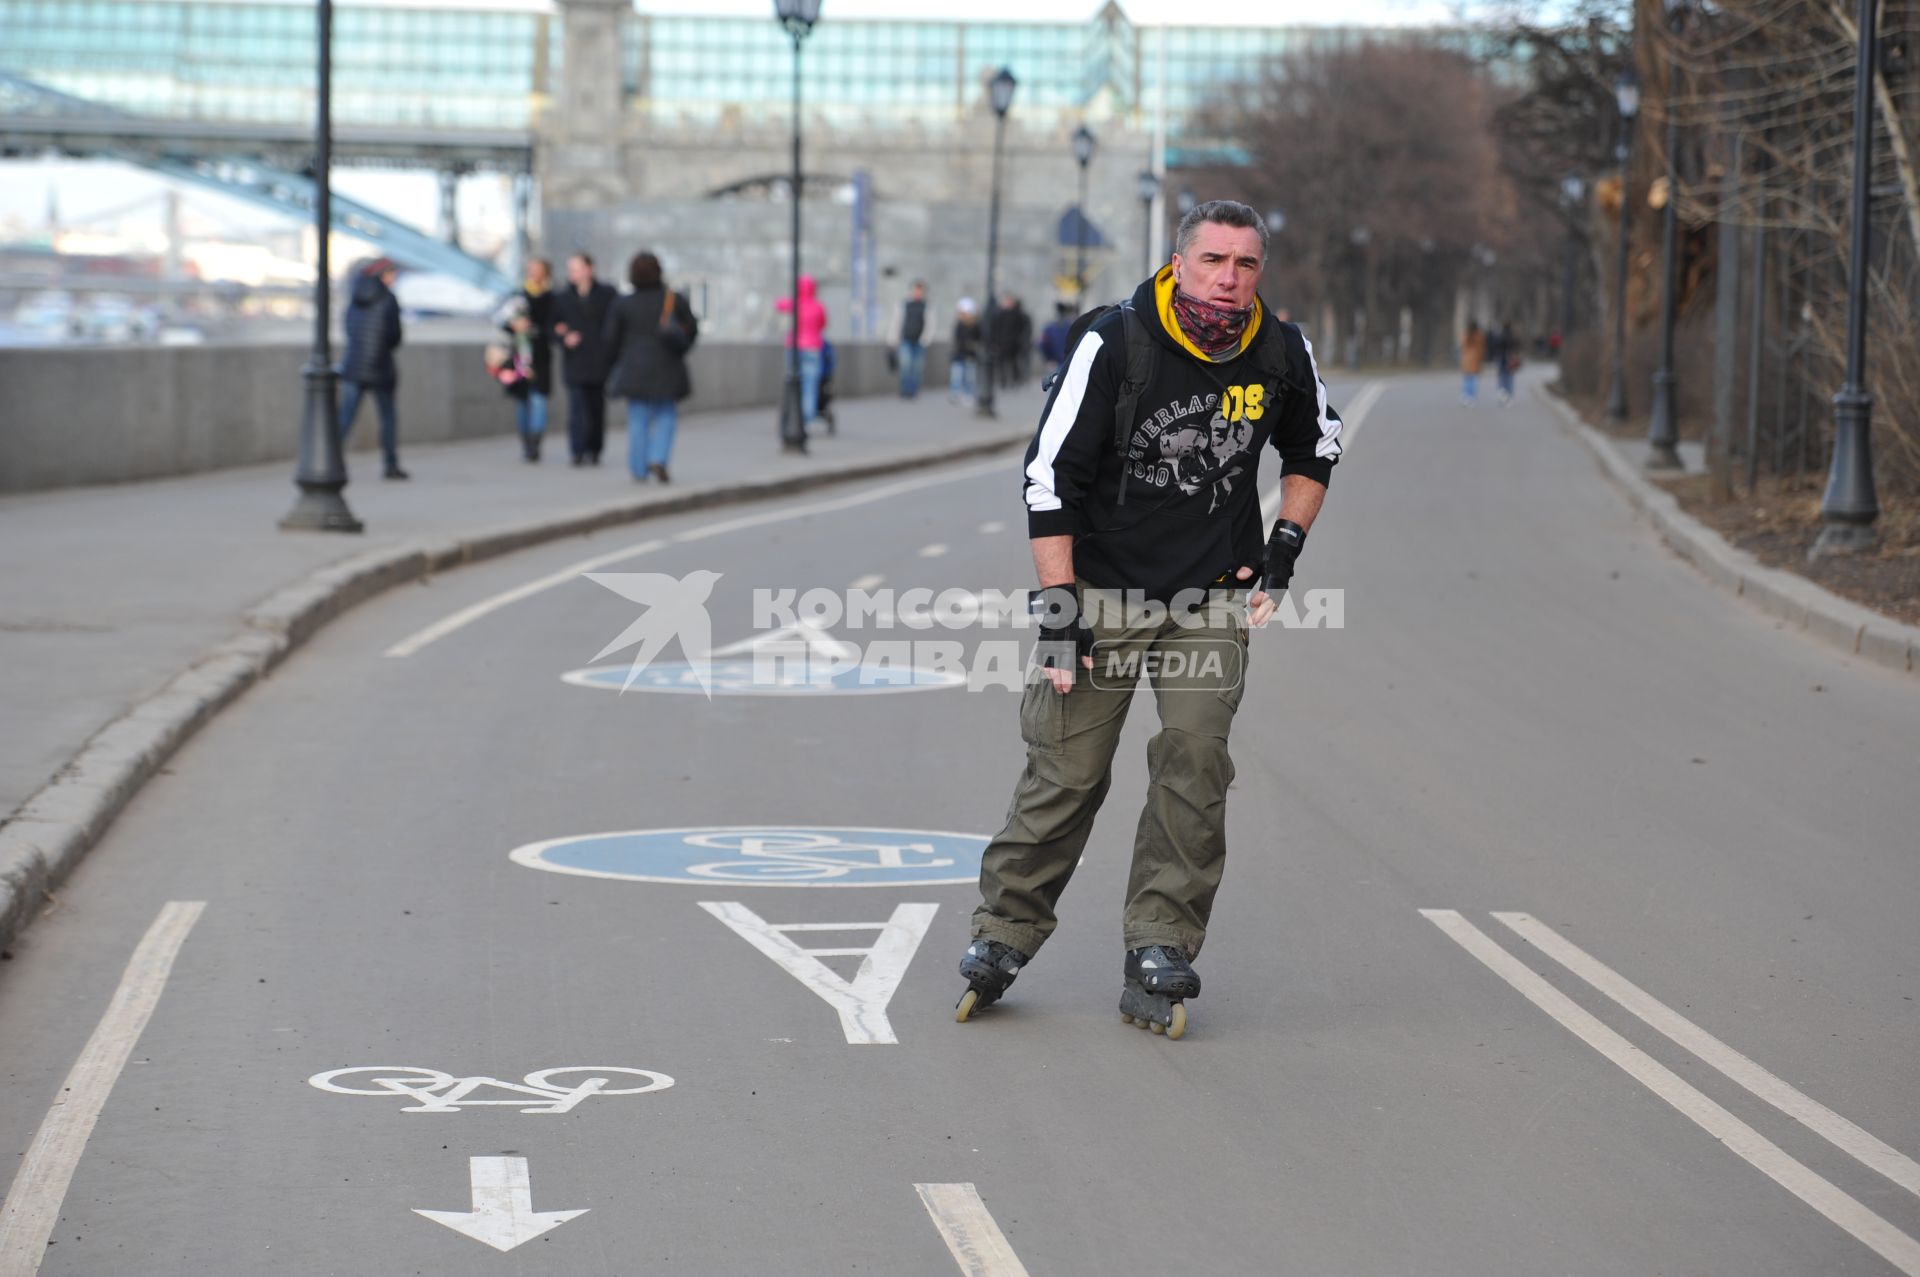 Парк культуры и отдыха имени Горького. На снимке: мужчина едет на роликовых коньках.